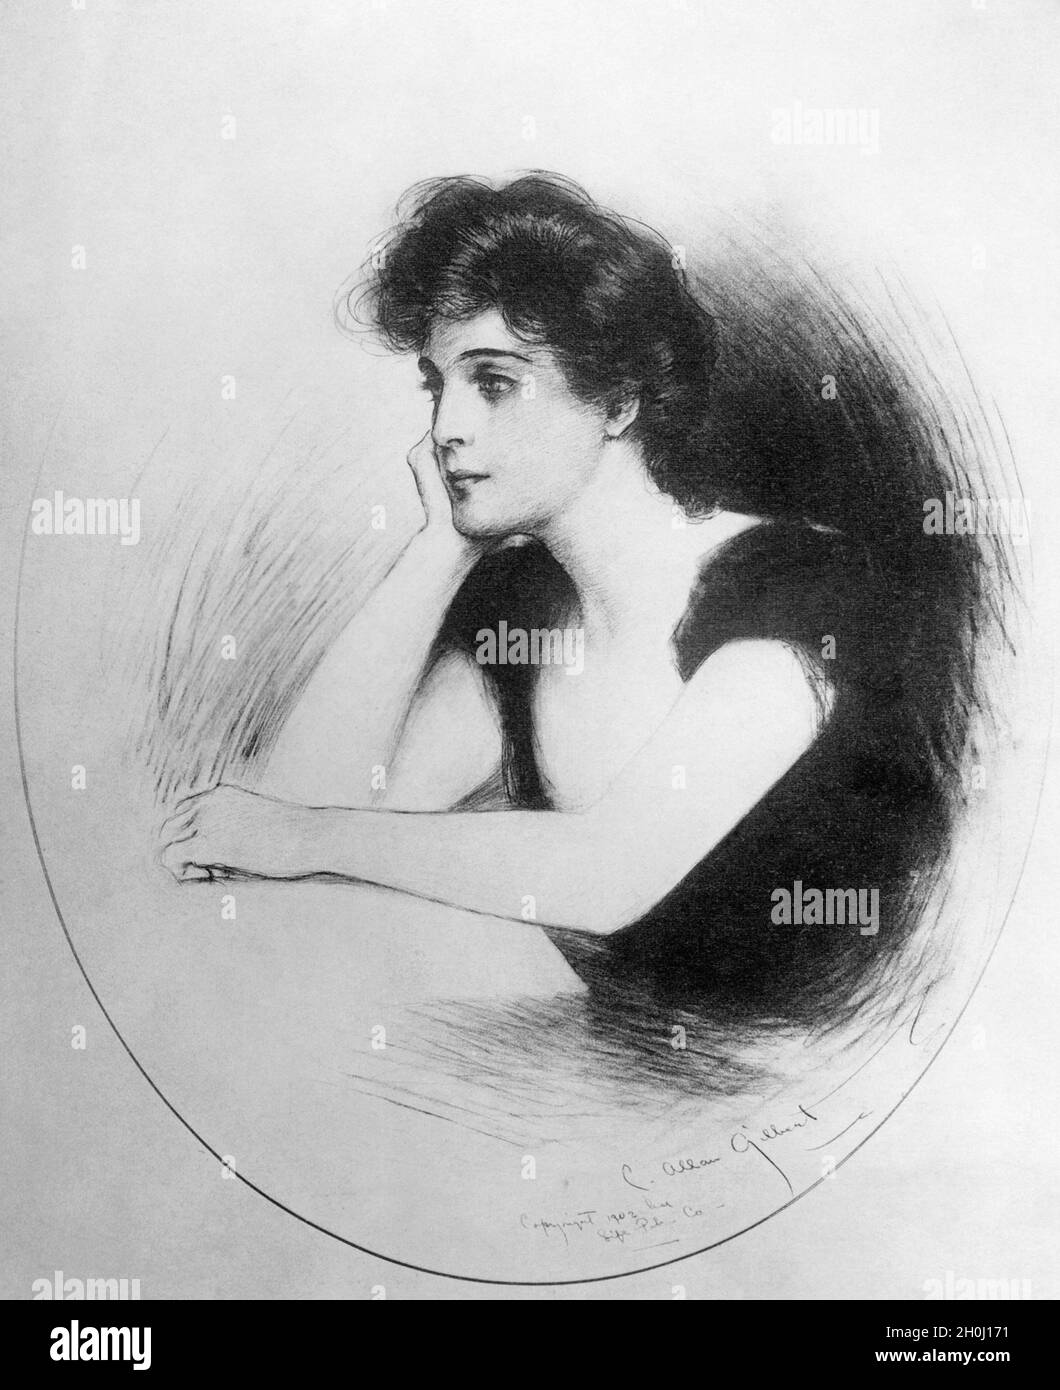 '''Gibson Girl'' dessin de l'artiste Gilbert.''Gibson Girls'' représente l'idéal féminin personnifié, selon les dessins de l'artiste Charles Dana Gibson, au début du XXe siècle.[traduction automatique]' Banque D'Images